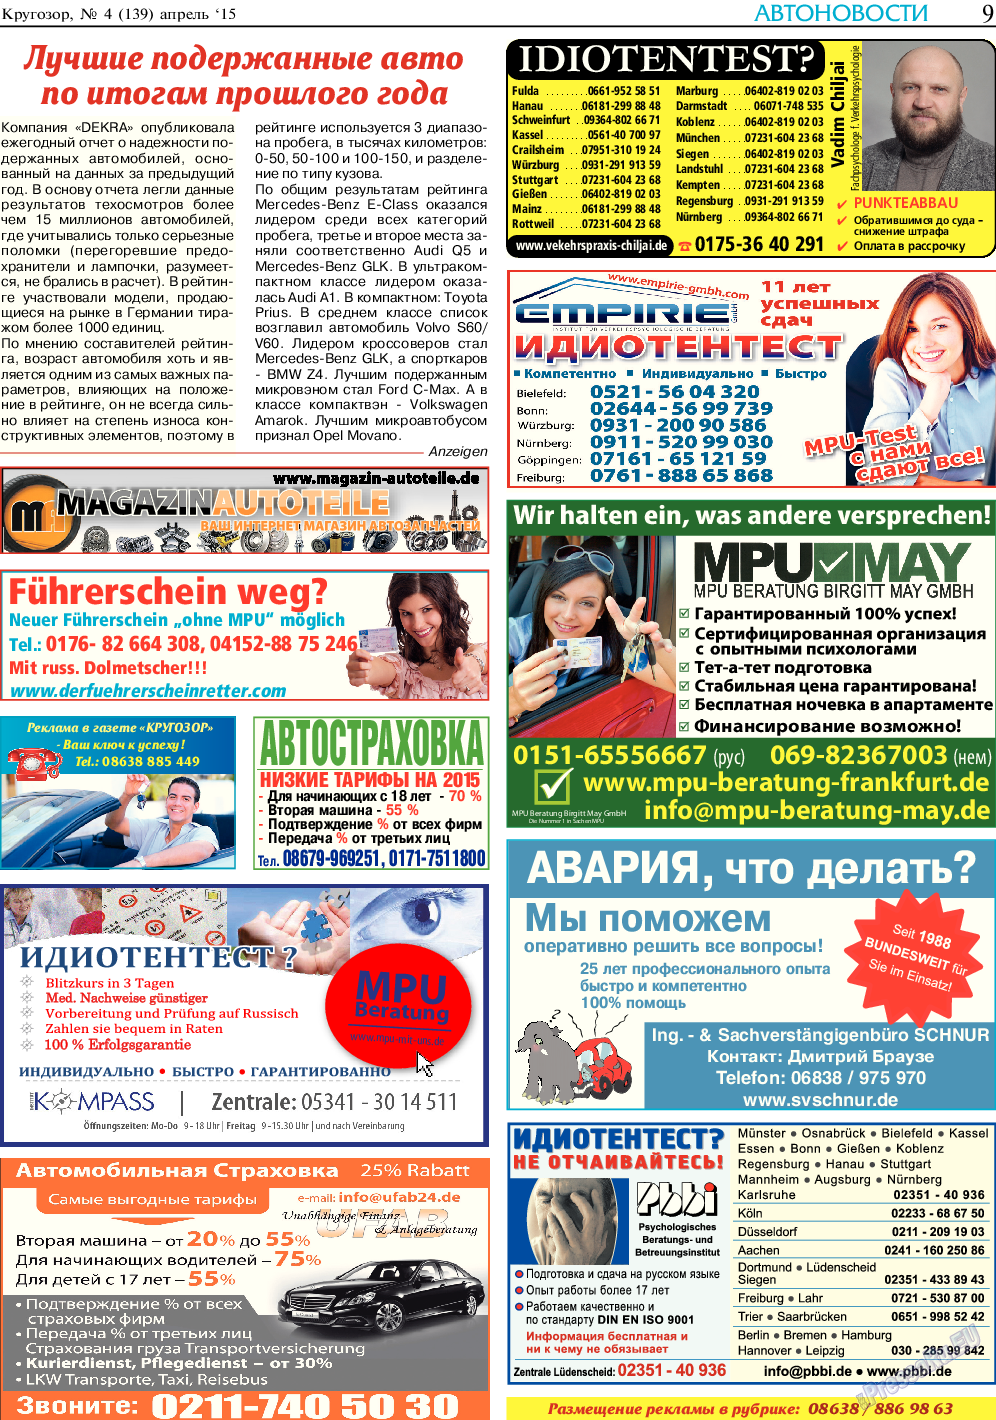 Кругозор, газета. 2015 №4 стр.9